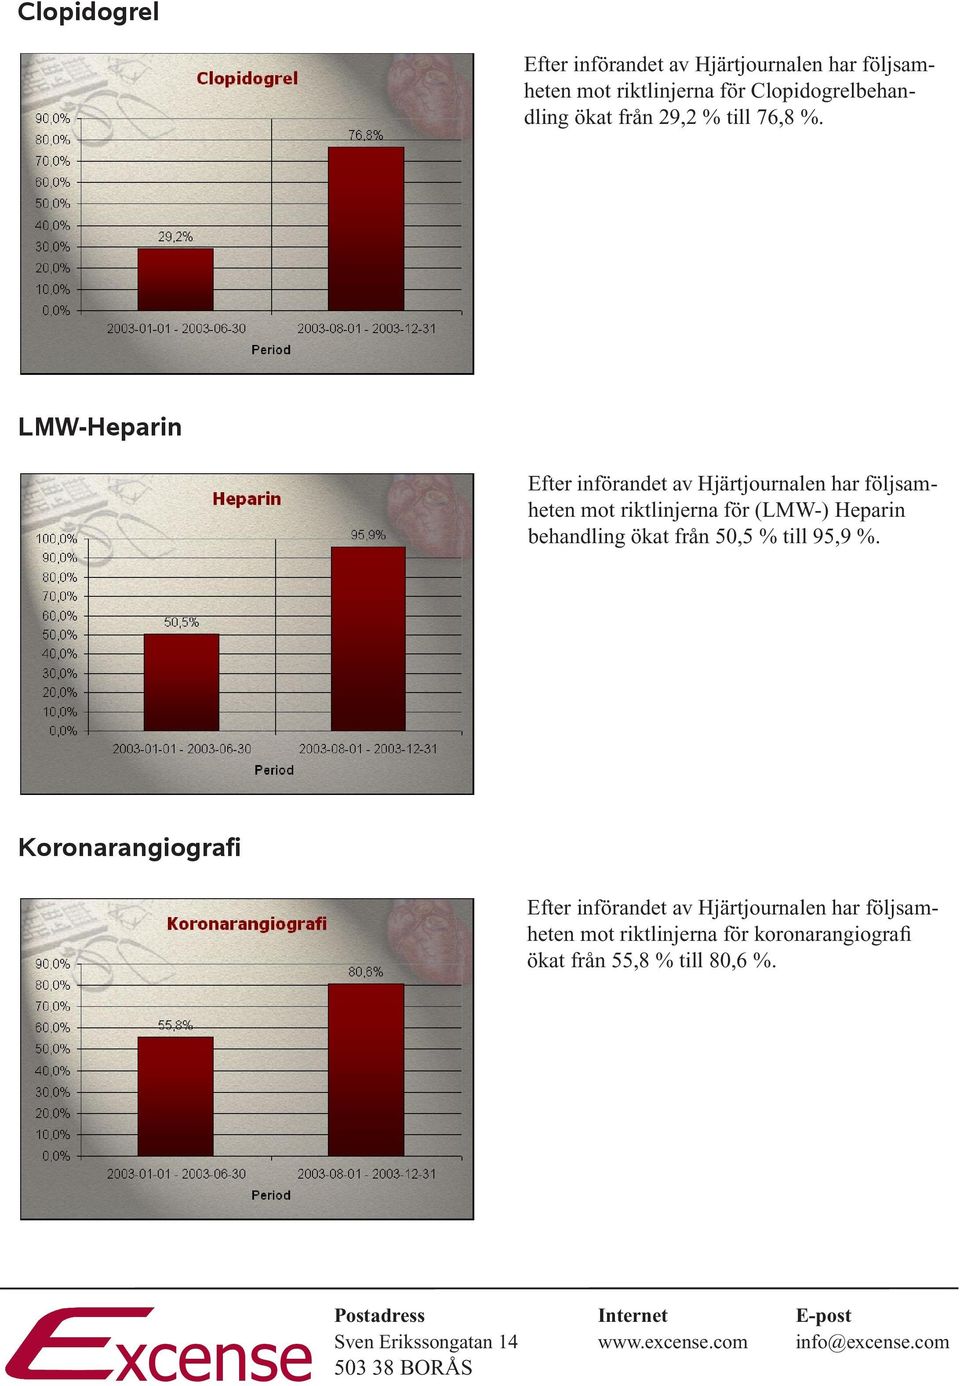 LMW-Heparin mot riktlinjerna för (LMW-) Heparin behandling ökat från 50,5 %